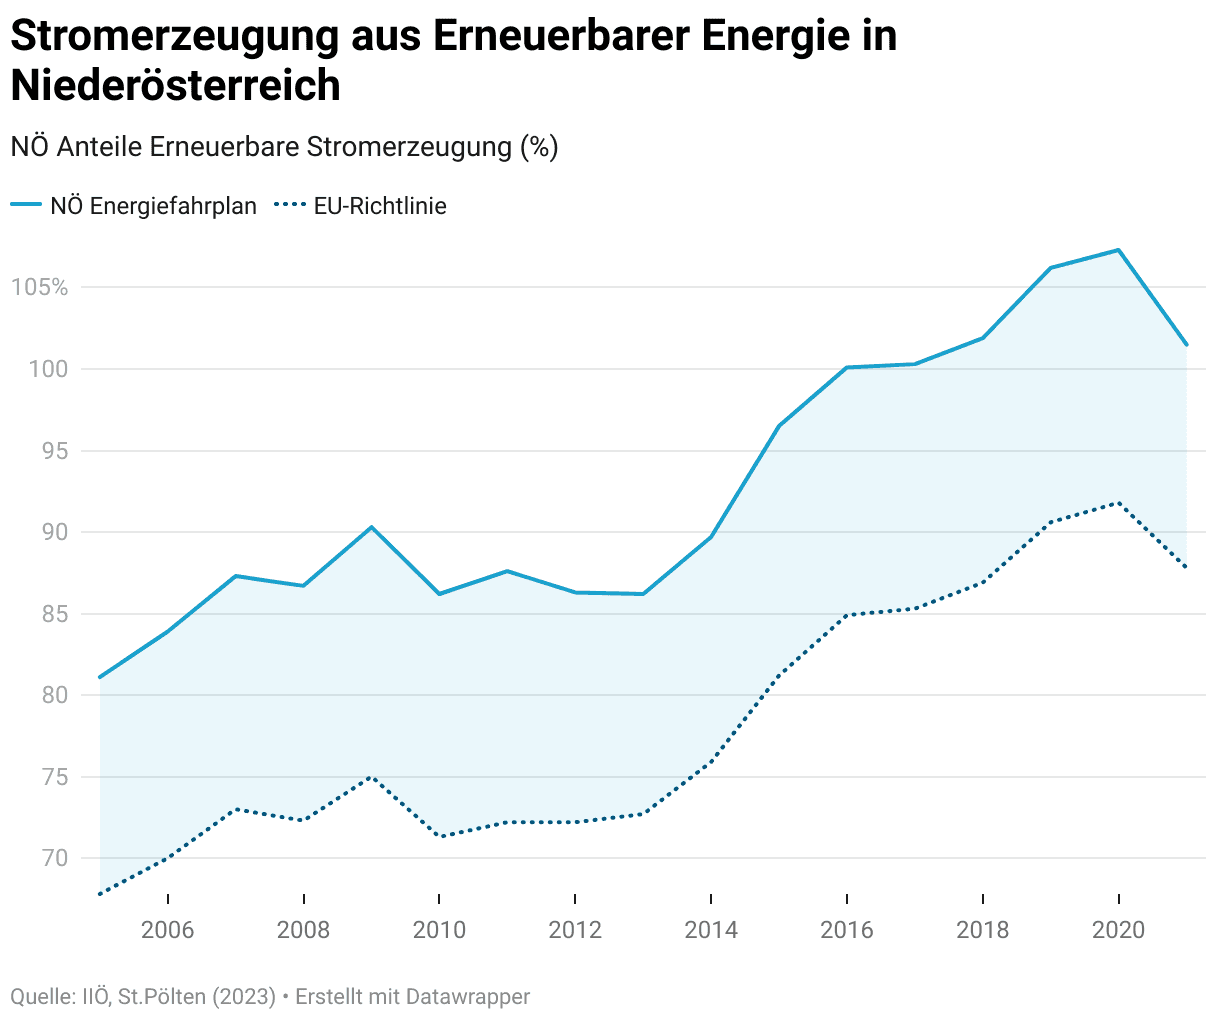 Stromerzeugung aus Erneuerbarer Energie in Niederösterreich